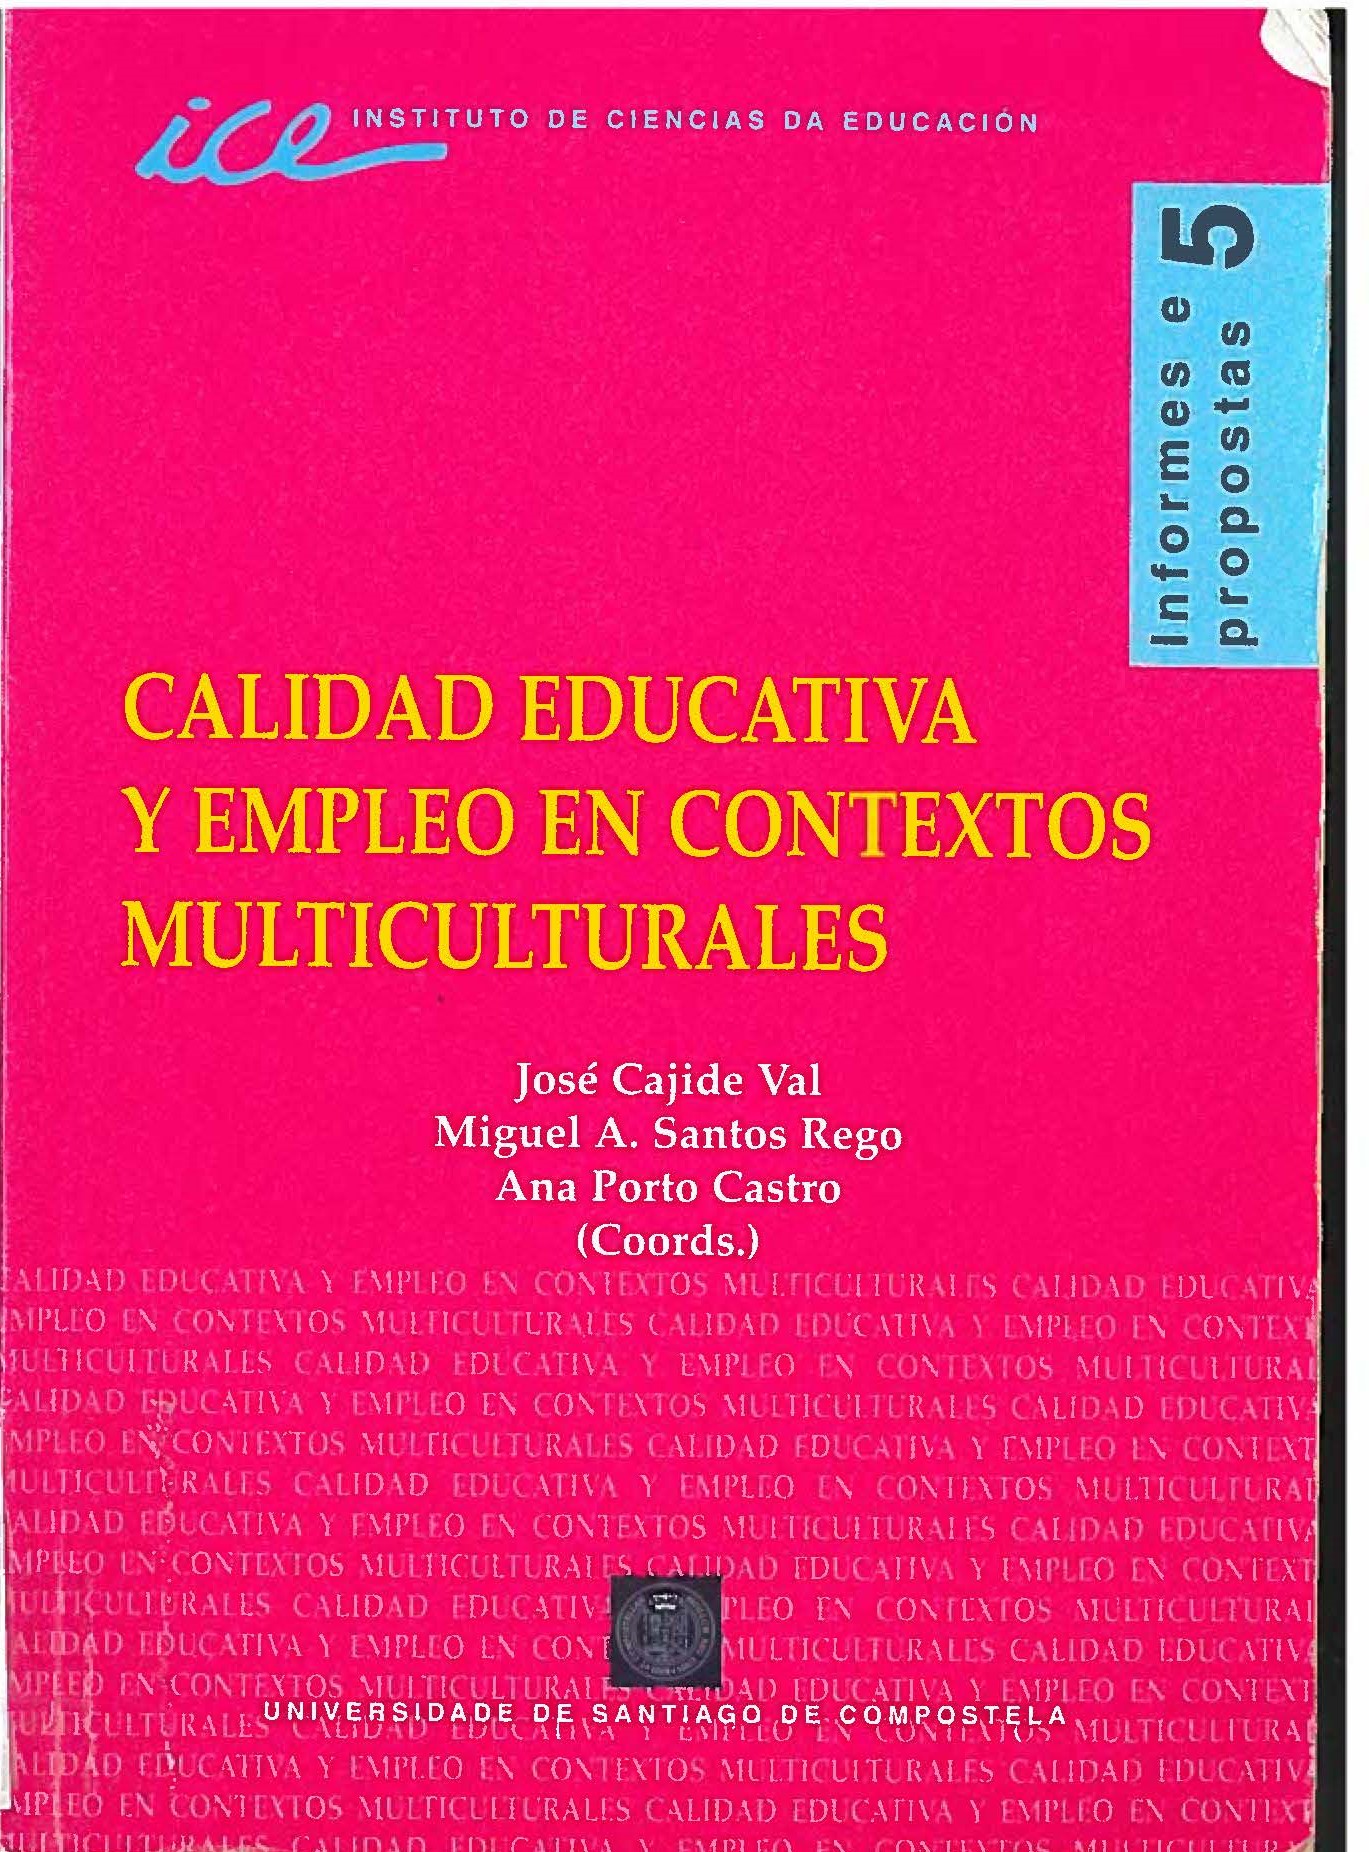 Imagen de portada del libro Calidad educativa y empleo en contextos multiculturales